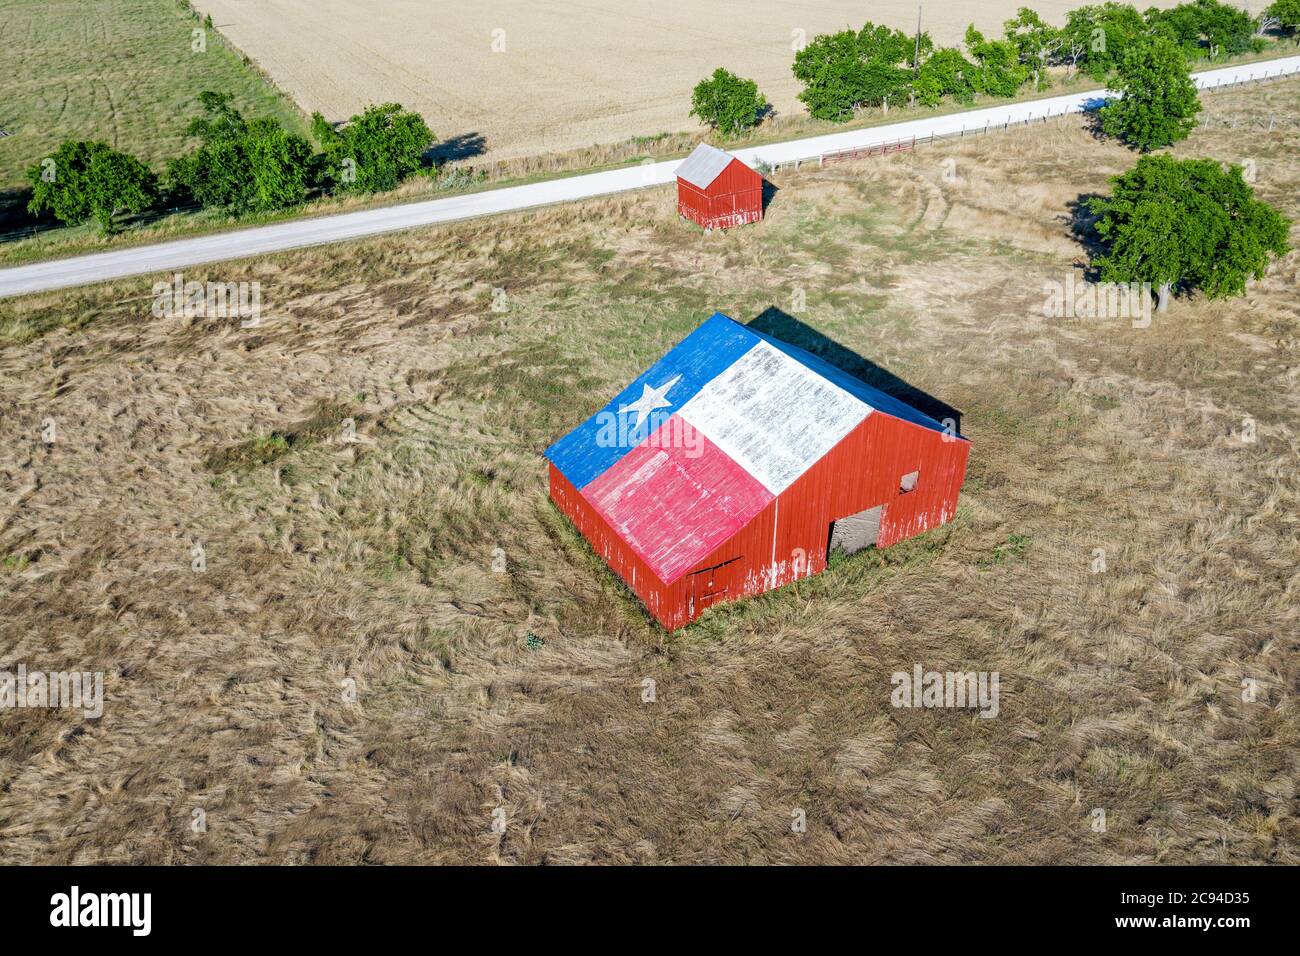 Un vecchio fienile abbandonato con il simbolo del Texas dipinto sul tetto si trova in una zona rurale dello stato, incorniciato da terreni agricoli. Foto Stock